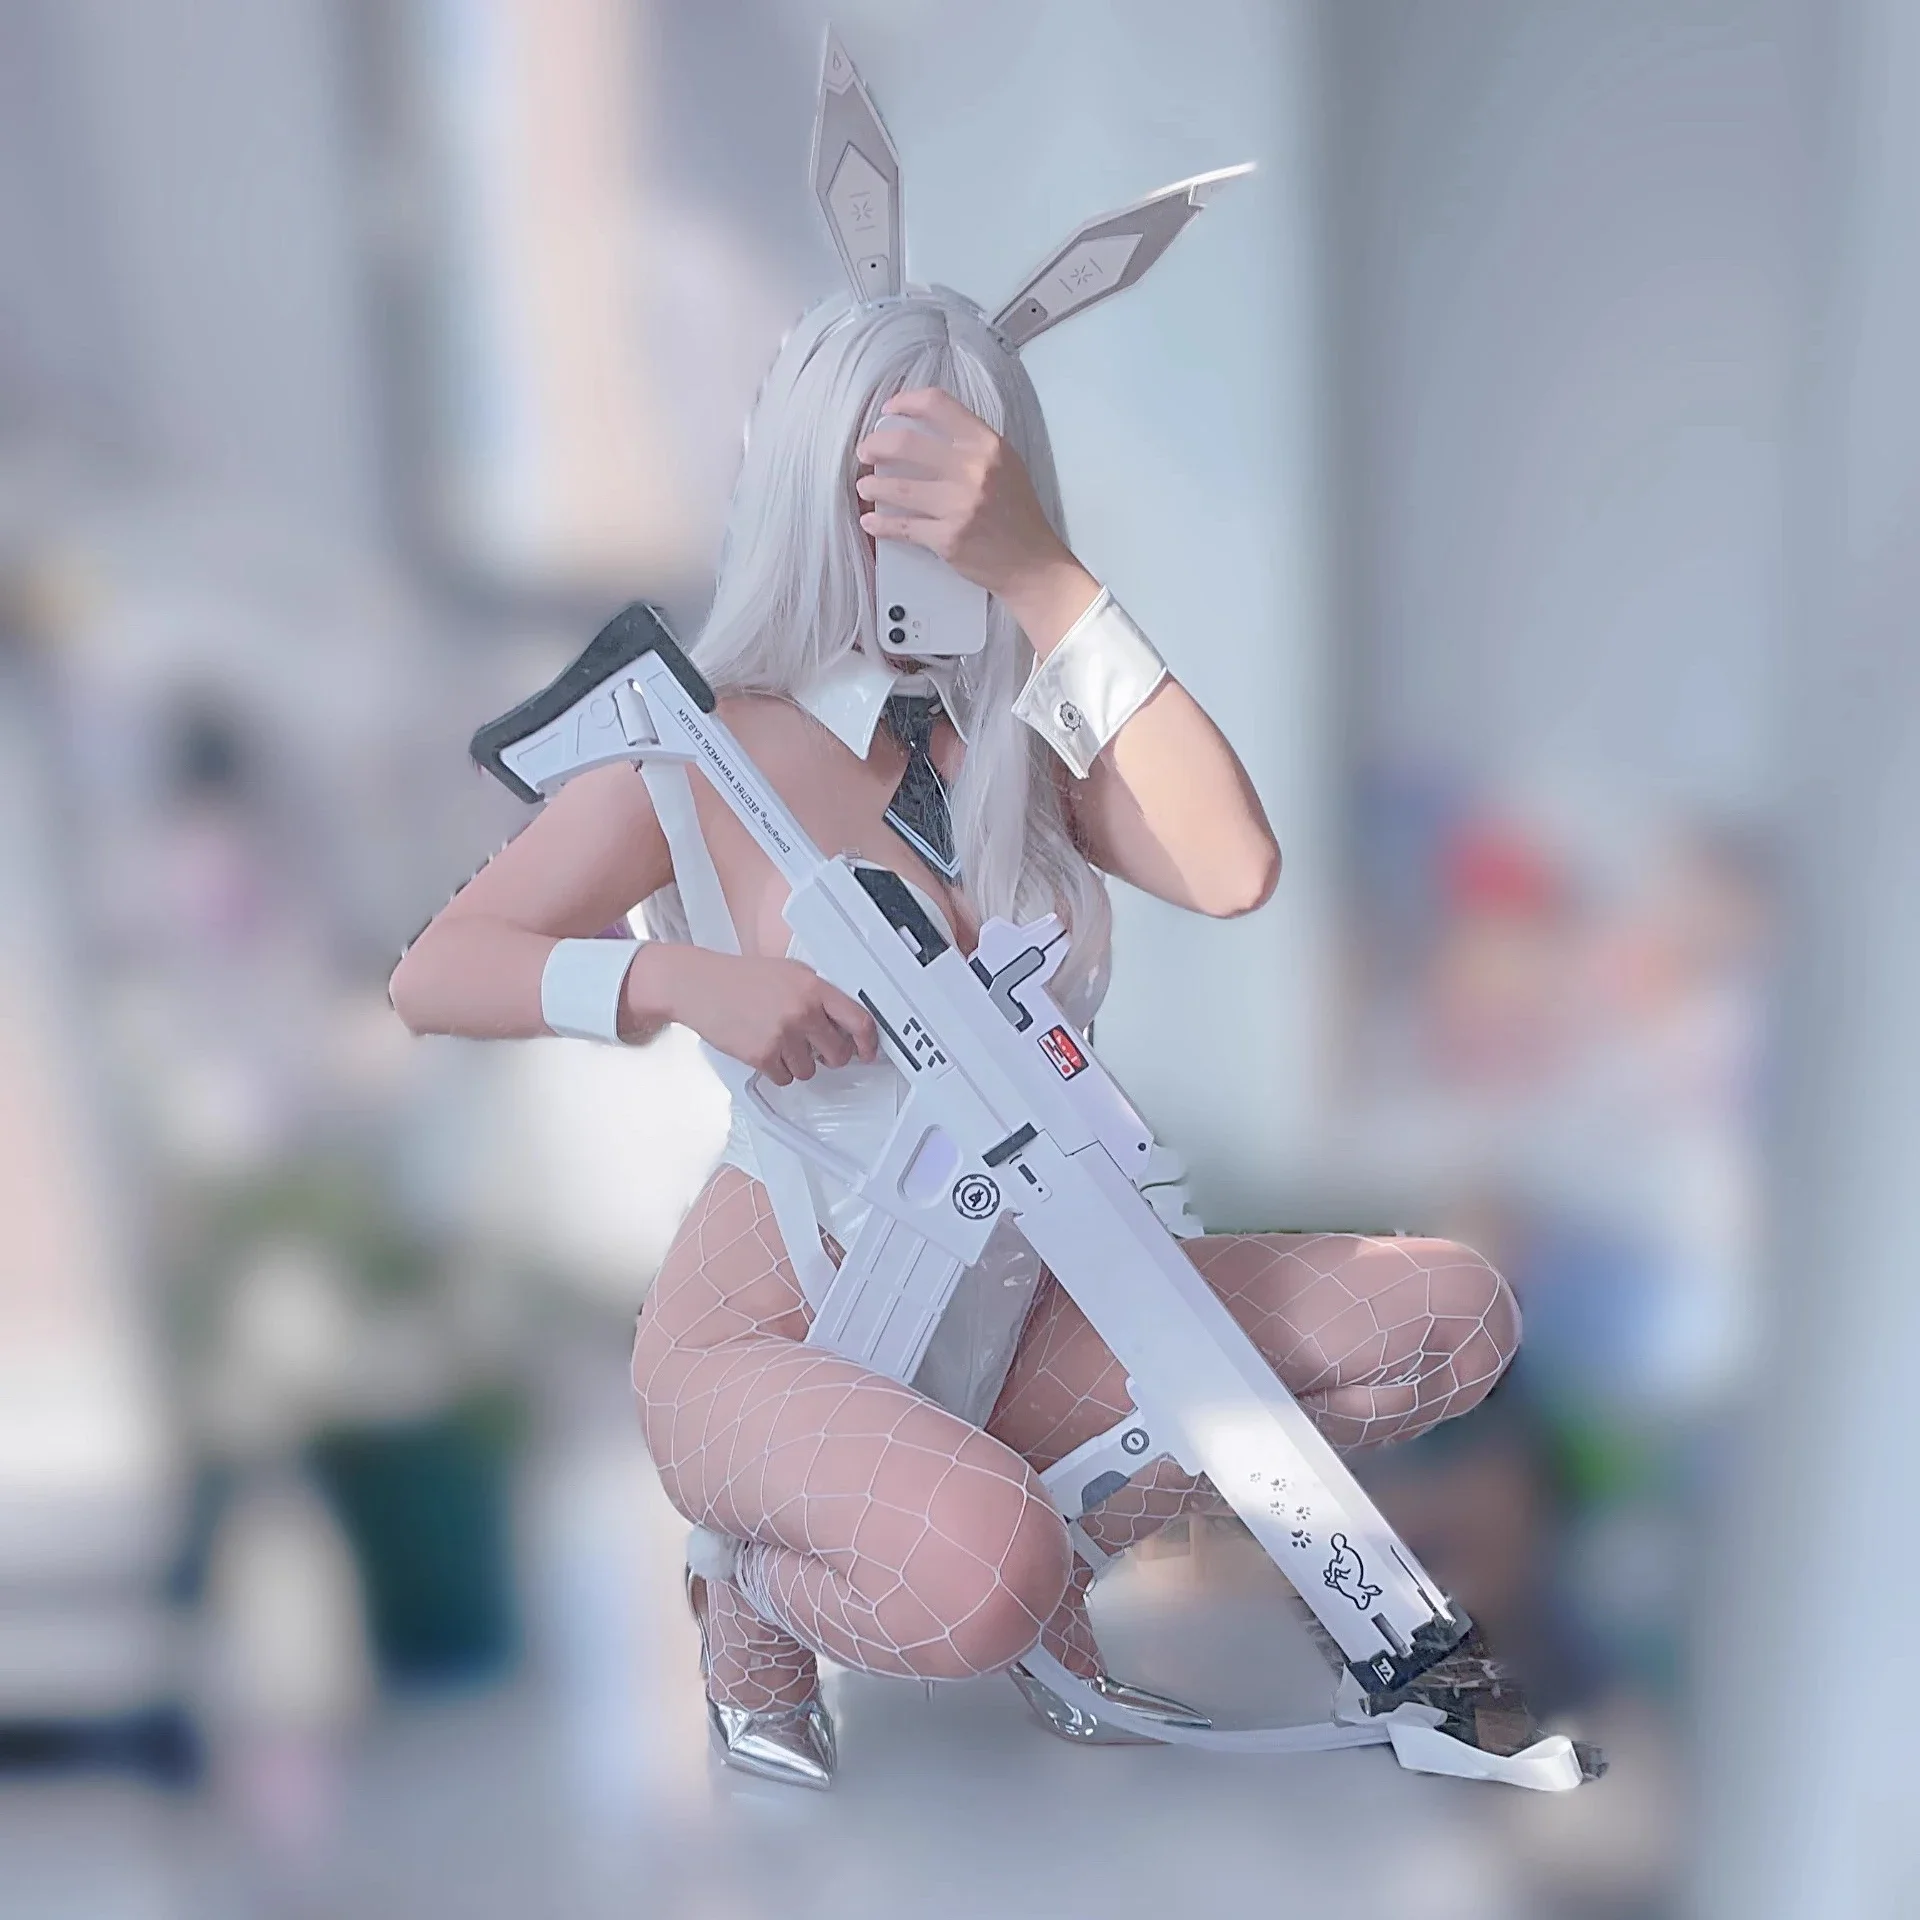 

Игра NIKKE богиня победы реквизит для косплея кролик X 777 белый кролик белое оружие модель пистолета на Хэллоуин искусственное оружие игрушка ручной работы